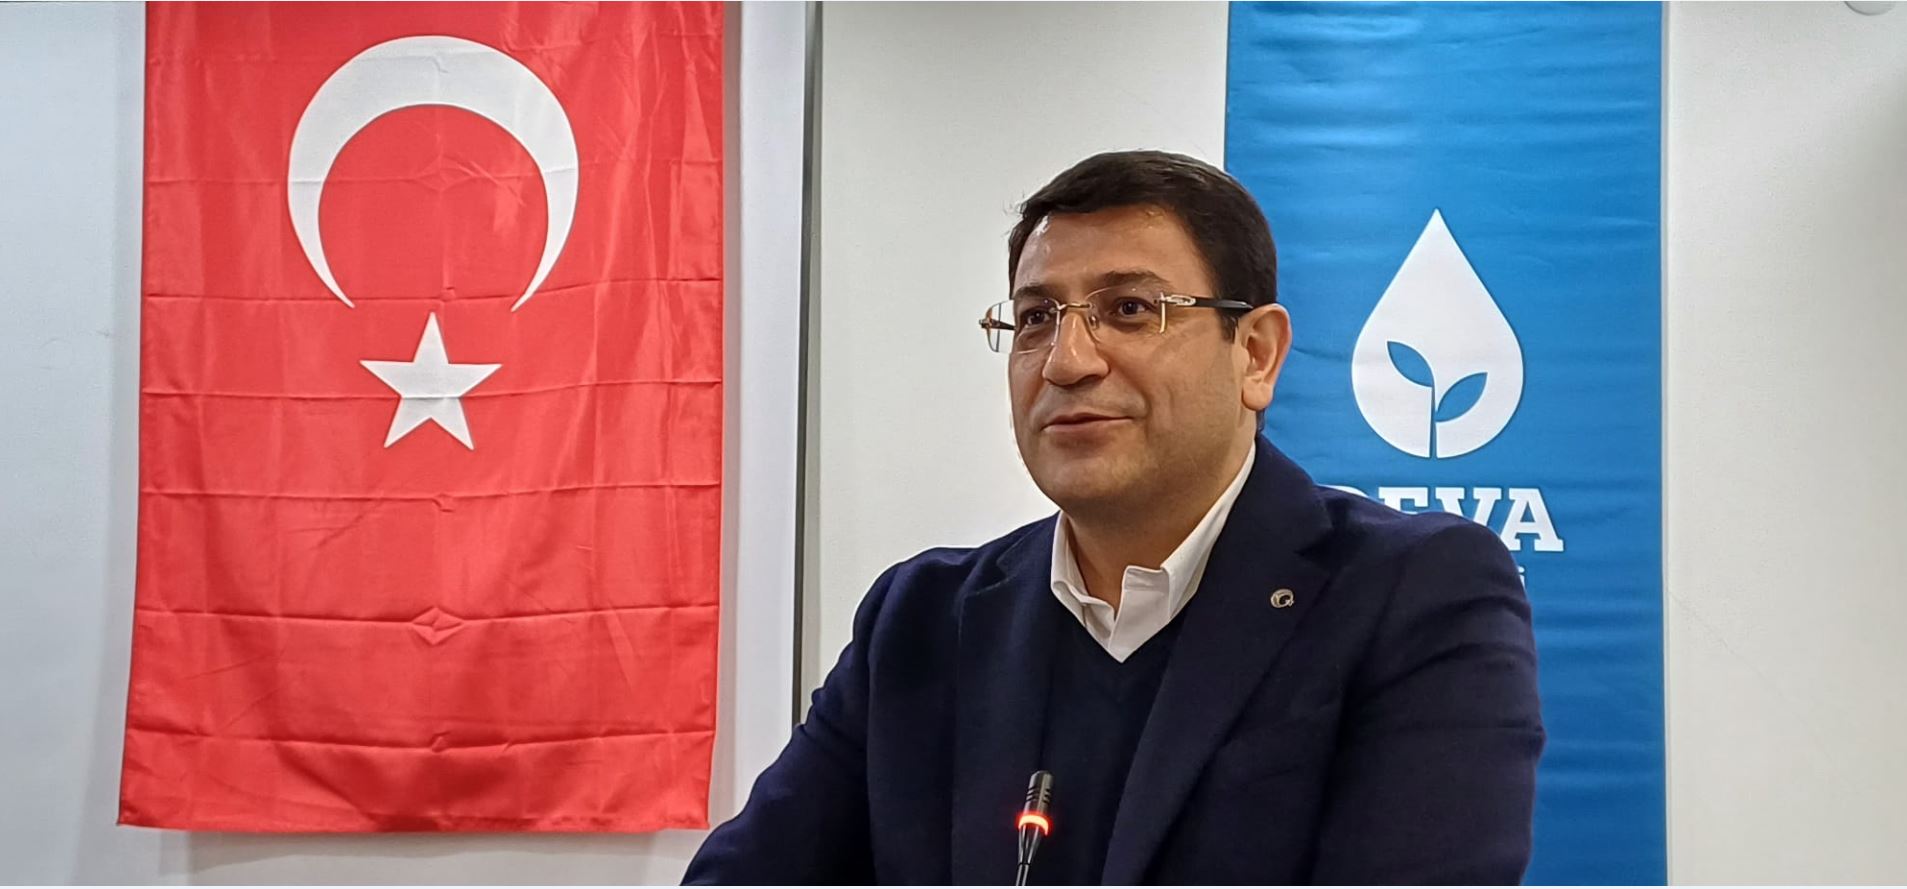 Demokrasi Ve Atılım Partisi (Deva) Genel Başkan Yardımcısı, Parti Sözcüsü Ve Ankara Milletvekili İdris Şahin